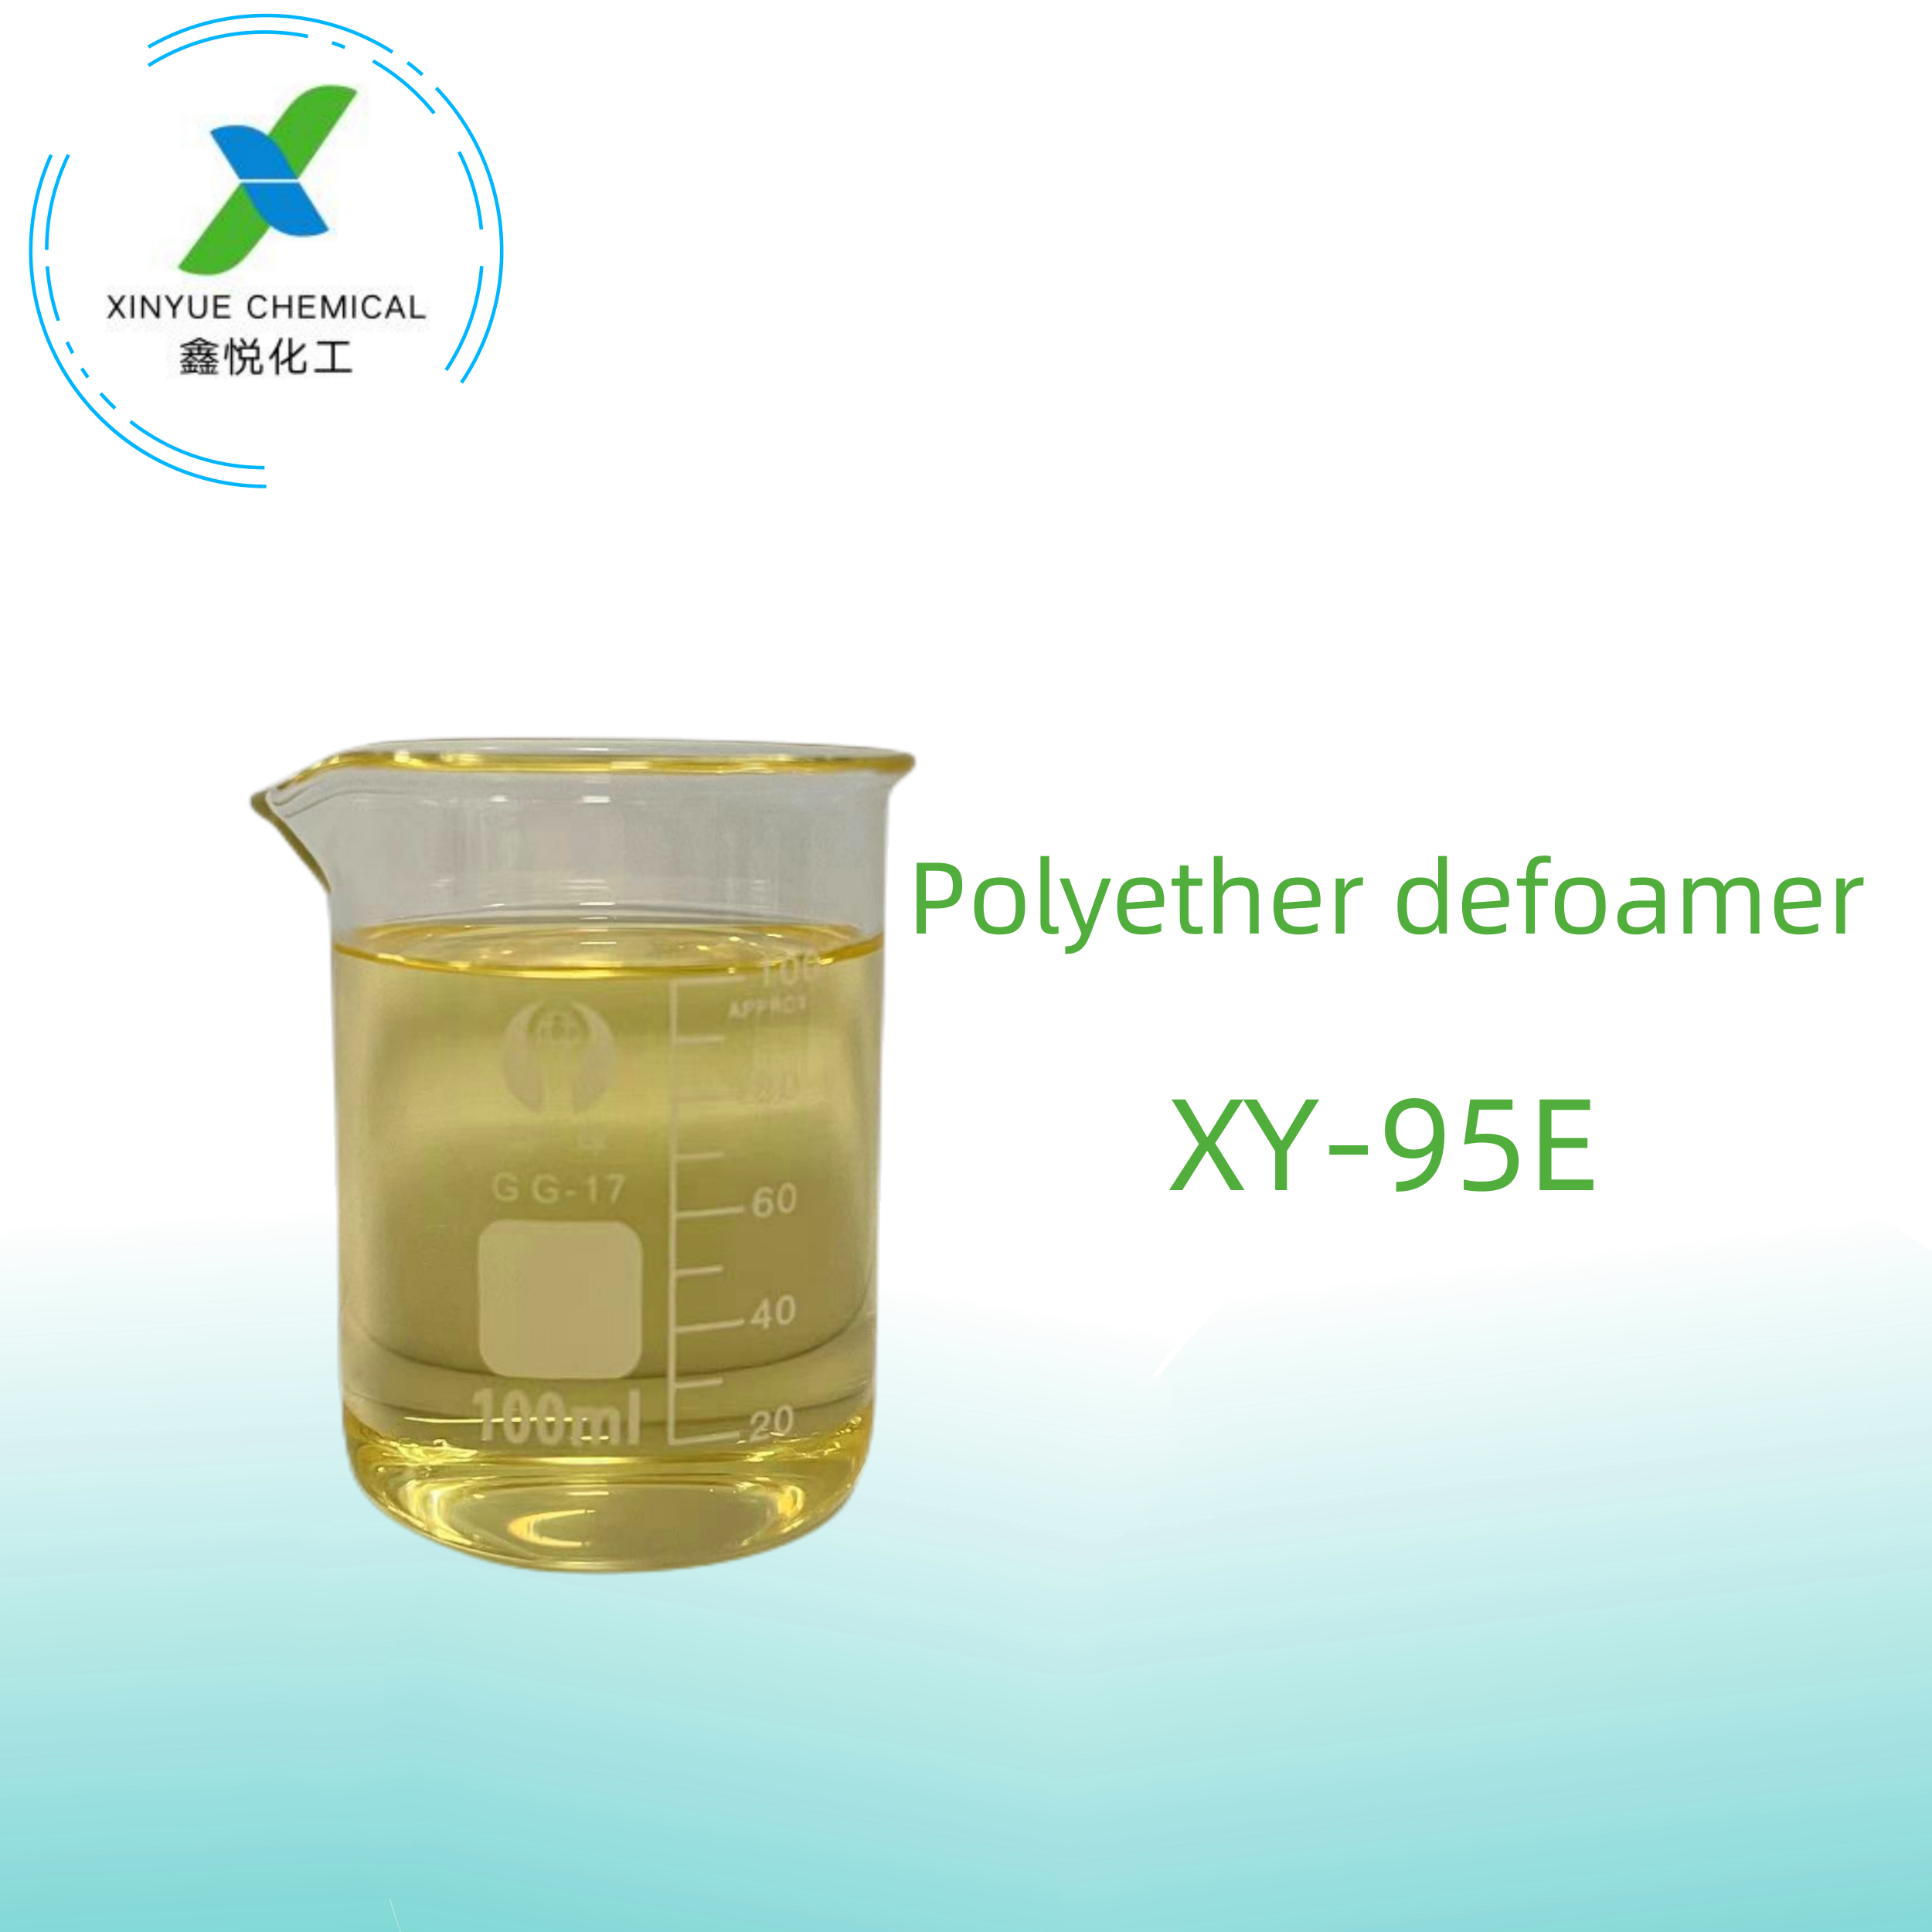 XY-95E Defoamer